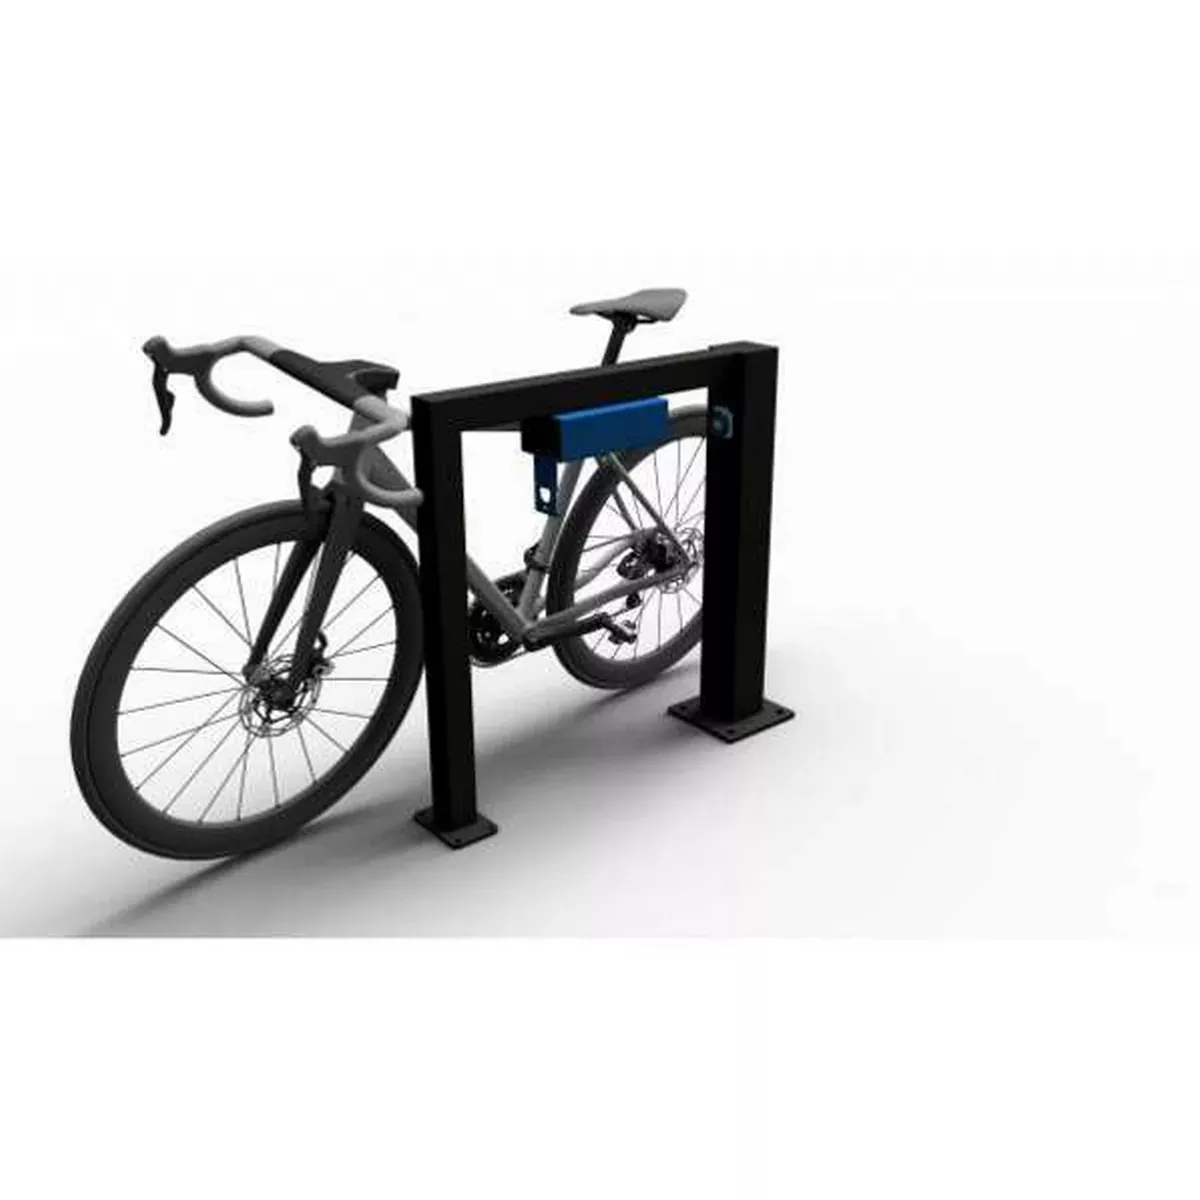 E-Bike Anlehnbügel -ladestation mit verschließbarer Ladebox und Steckdose, schwarz, Br.800 x H.800 mm, zum Aufdübeln